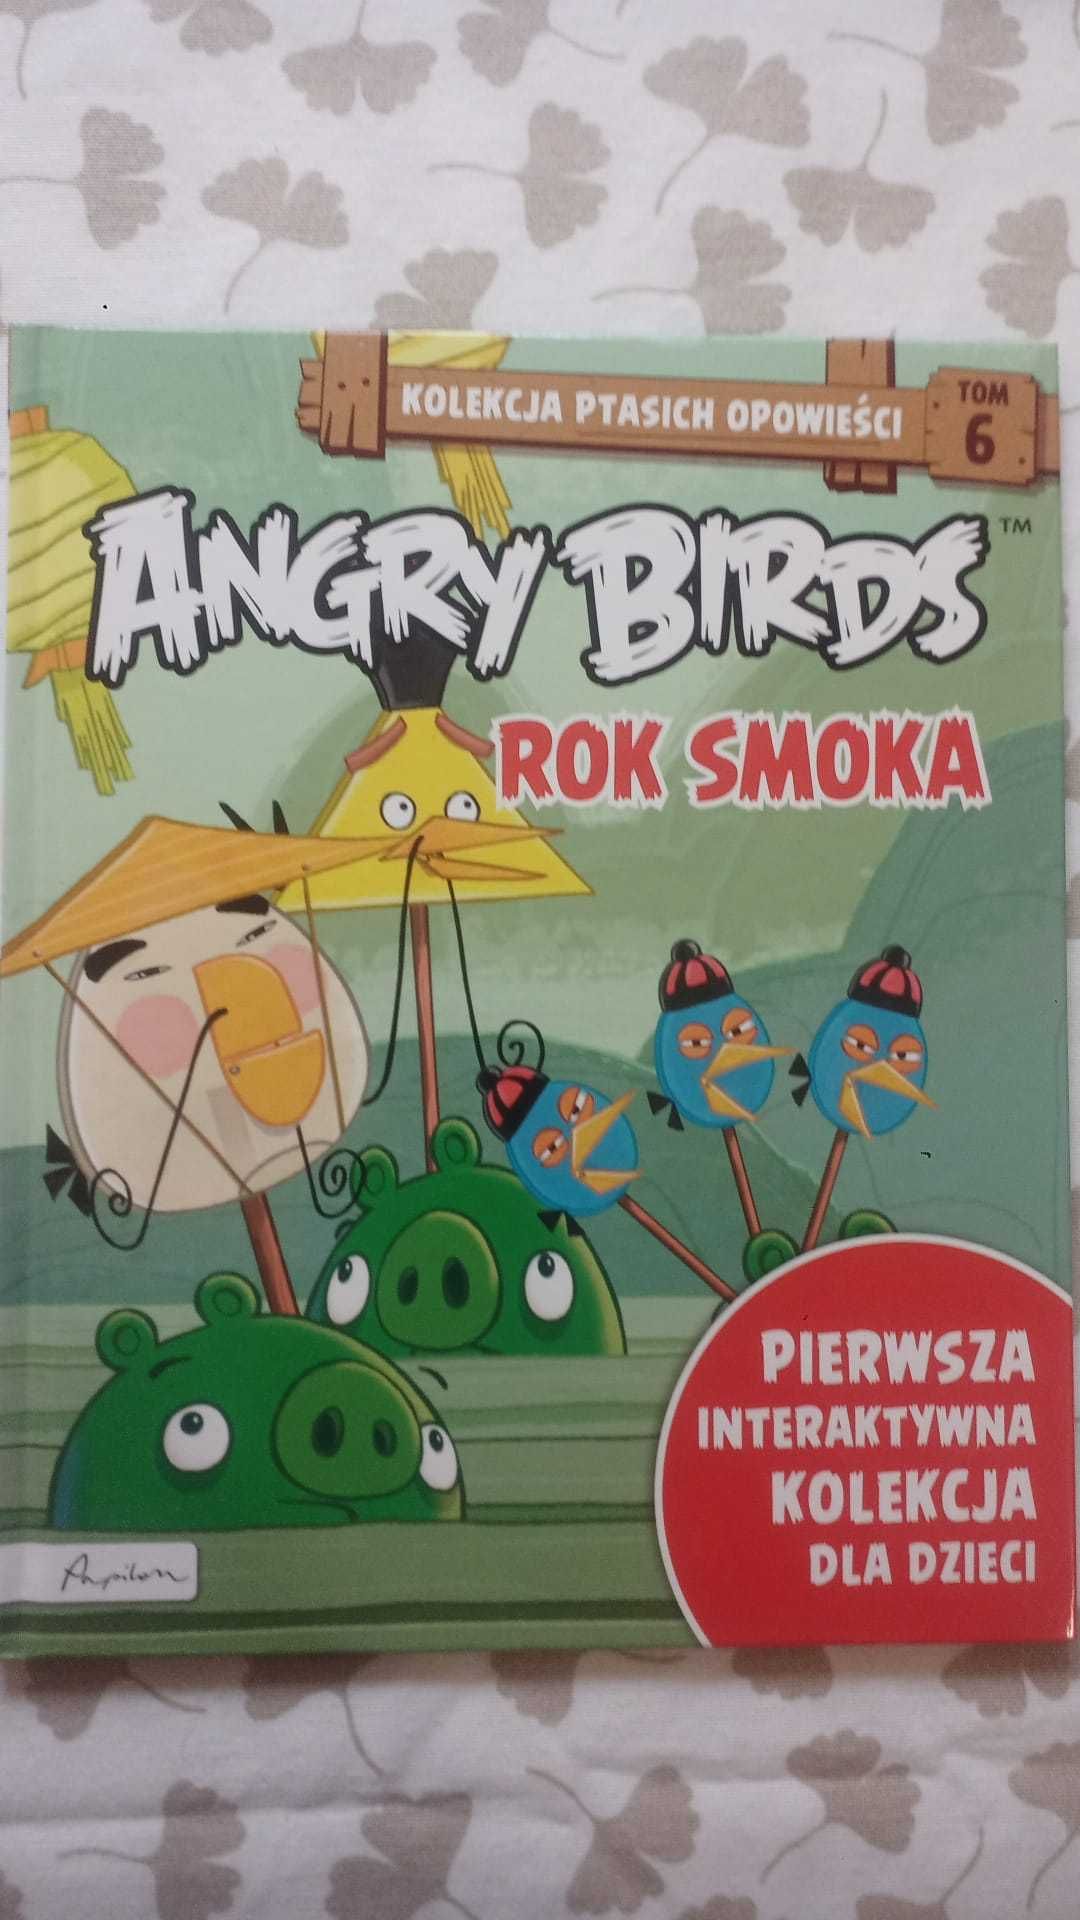 Angry Birds. Kolekcja ptasich opowieści. Tom 3 i 6